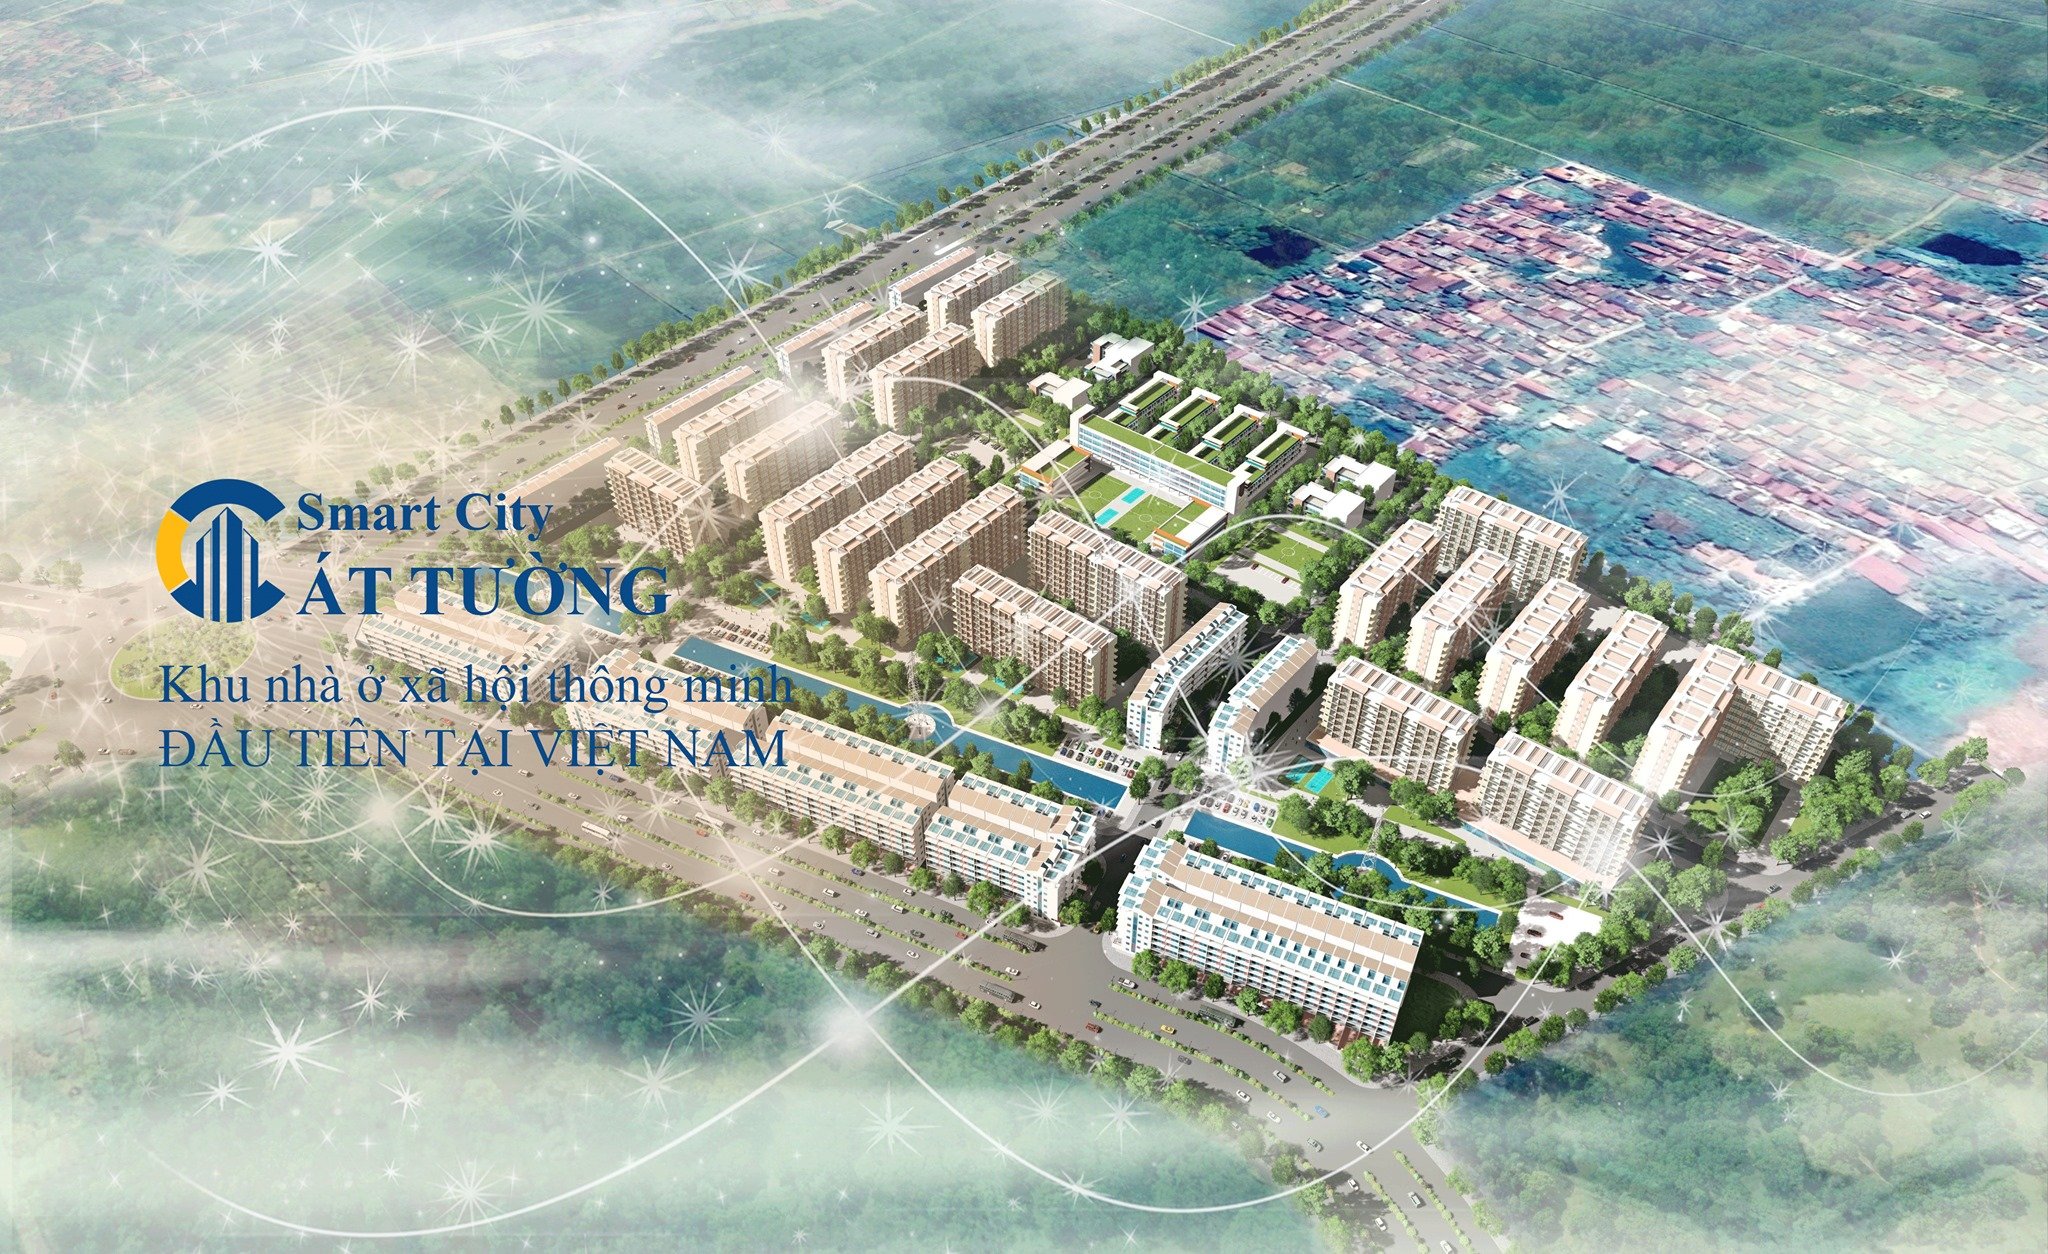 Chỉ 1,187 tỷ sở ữu ngay căn 3n- Cattuong smart city - Ảnh chính